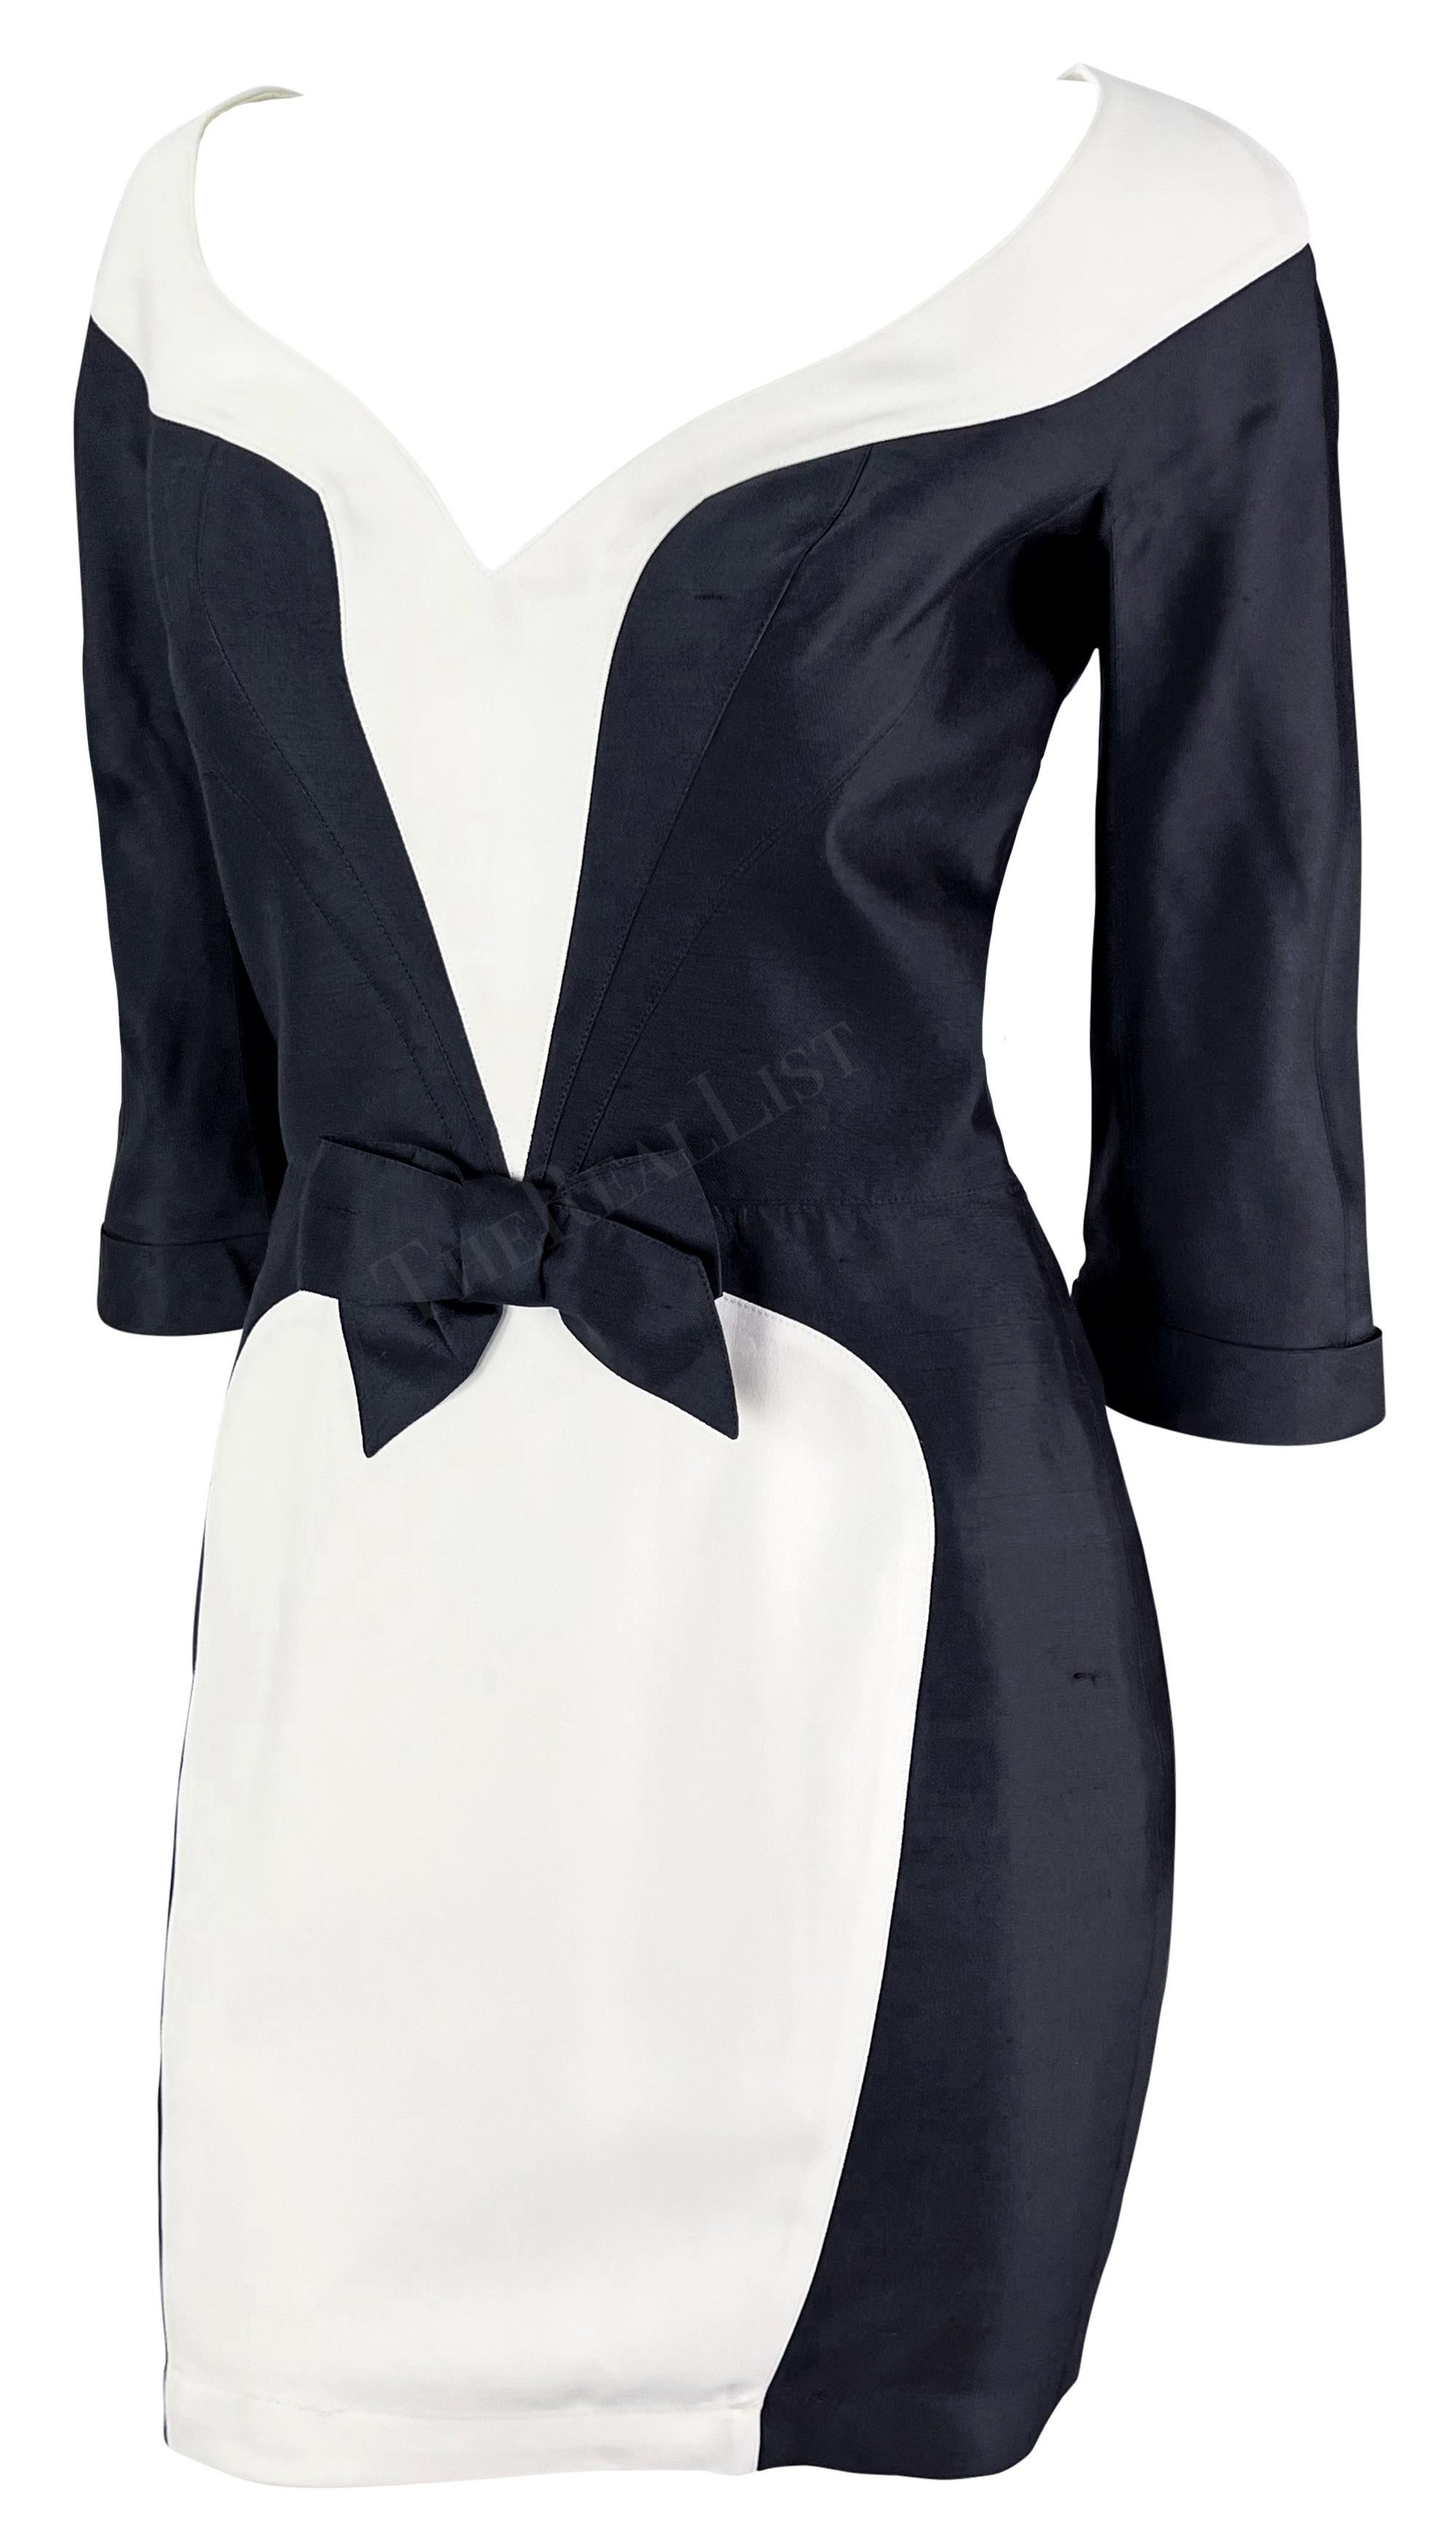 Whiting présente une mini robe chic noire et blanche de Thierry Mugler. Datant du milieu des années 1990, cette robe présente des motifs noirs et blancs. La robe présente un décolleté en V qui enveloppe le buste de façon ludique, des manches courtes